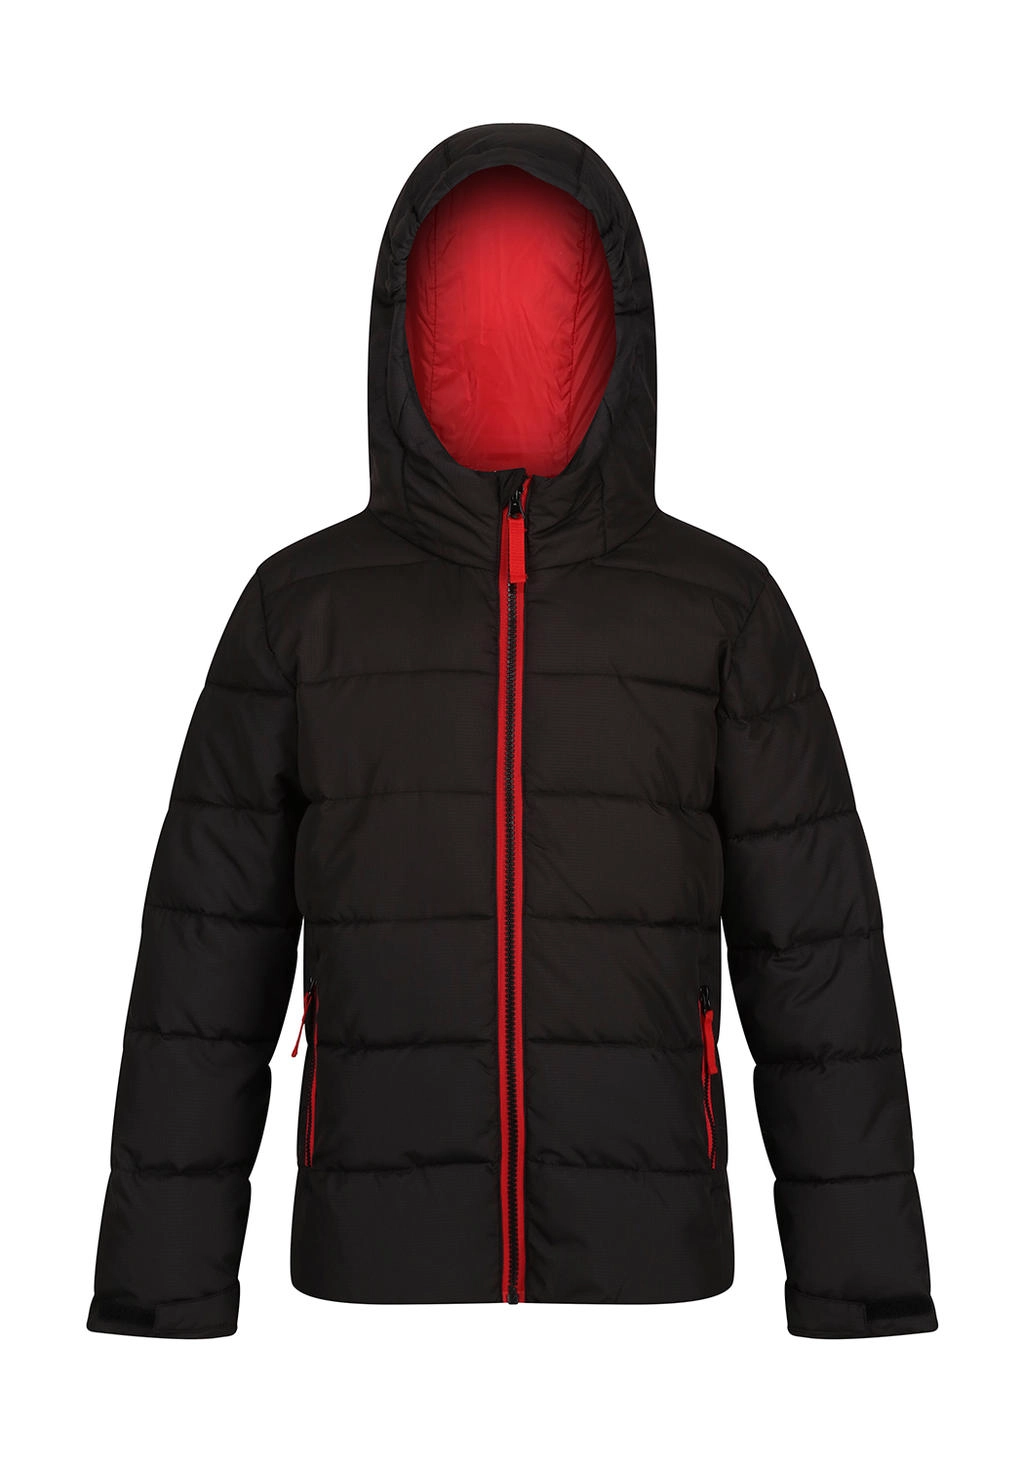 Junior Scholar Thermal Jacket zum Besticken und Bedrucken in der Farbe Black/Classic Red mit Ihren Logo, Schriftzug oder Motiv.